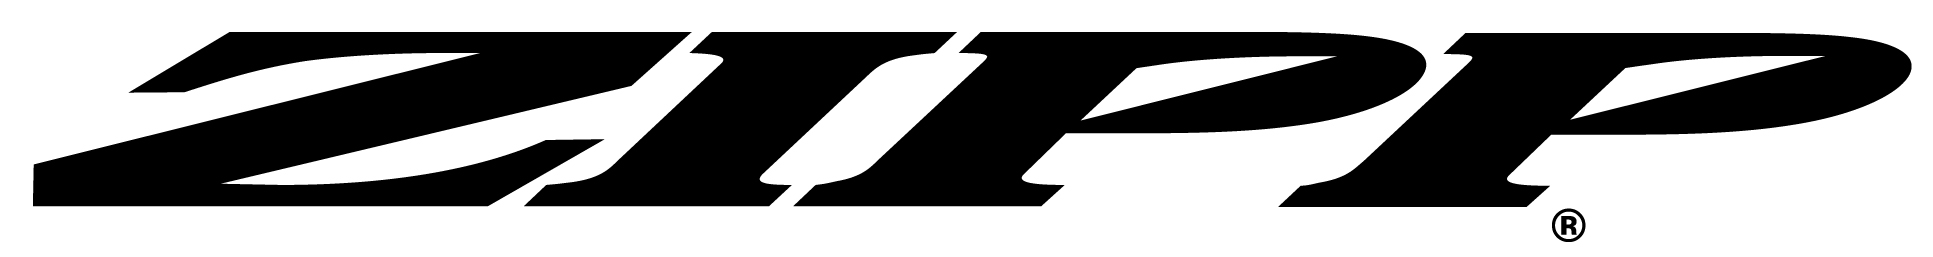 Zipp_OLD_logo.png